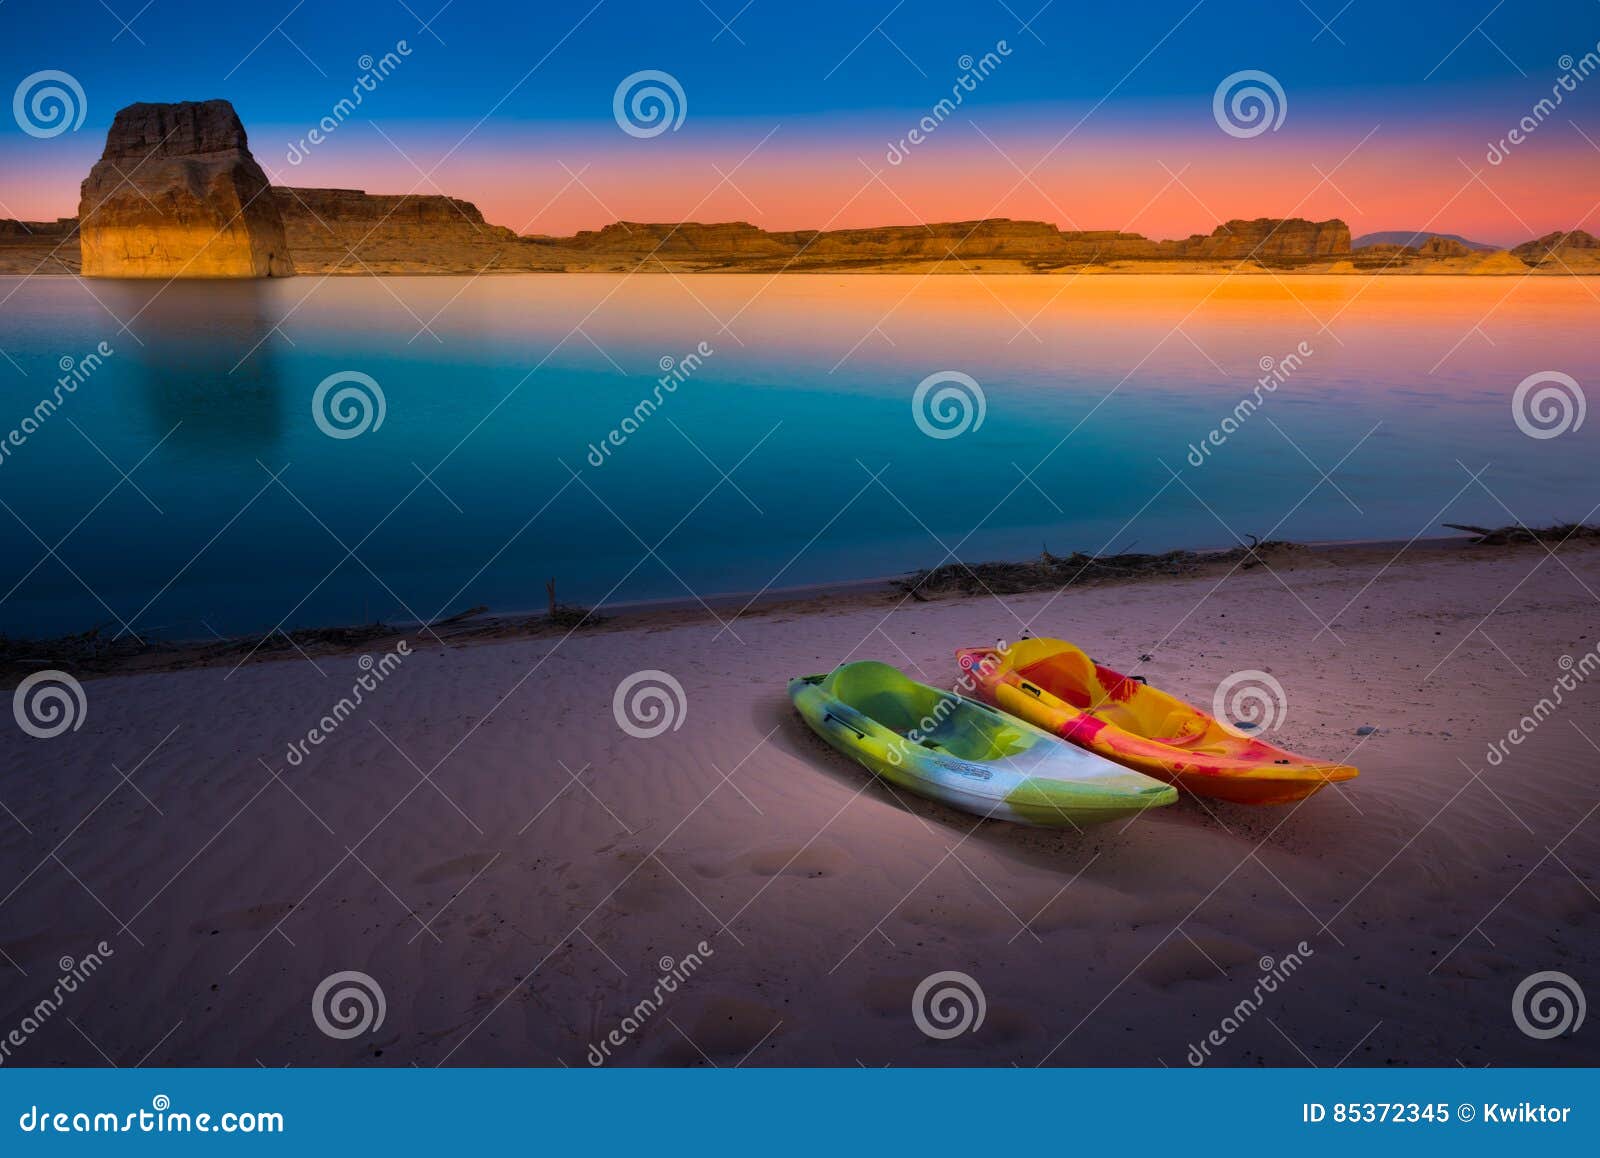 kayaking lake powell lone rock at sunset utah usa